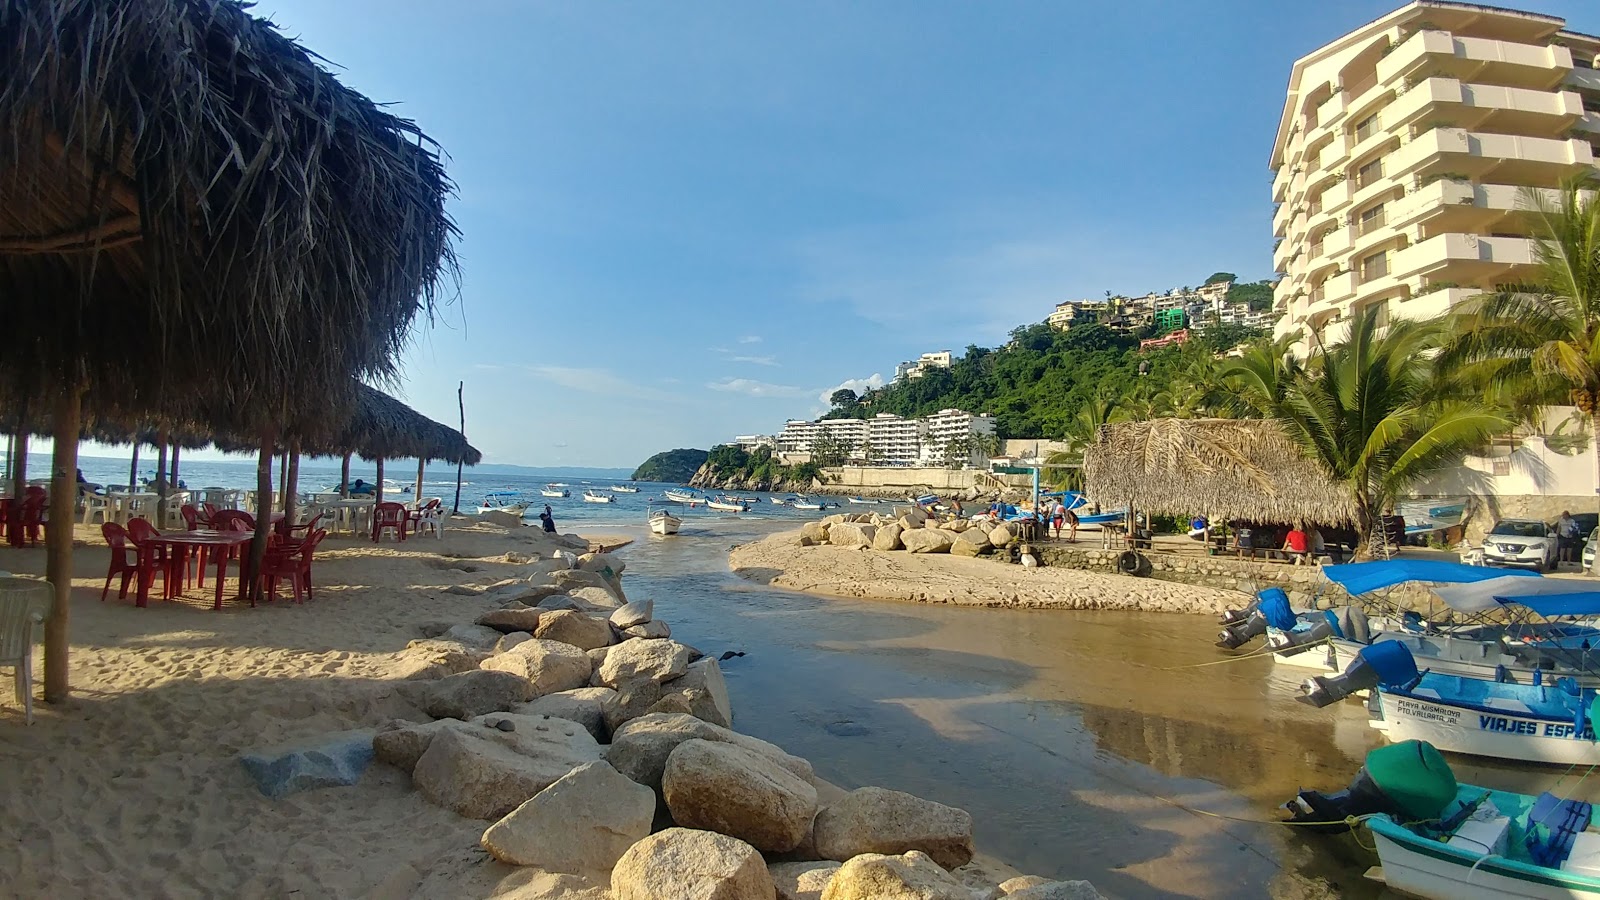 Fotografija Mismaloya beach priljubljeno mesto med poznavalci sprostitve